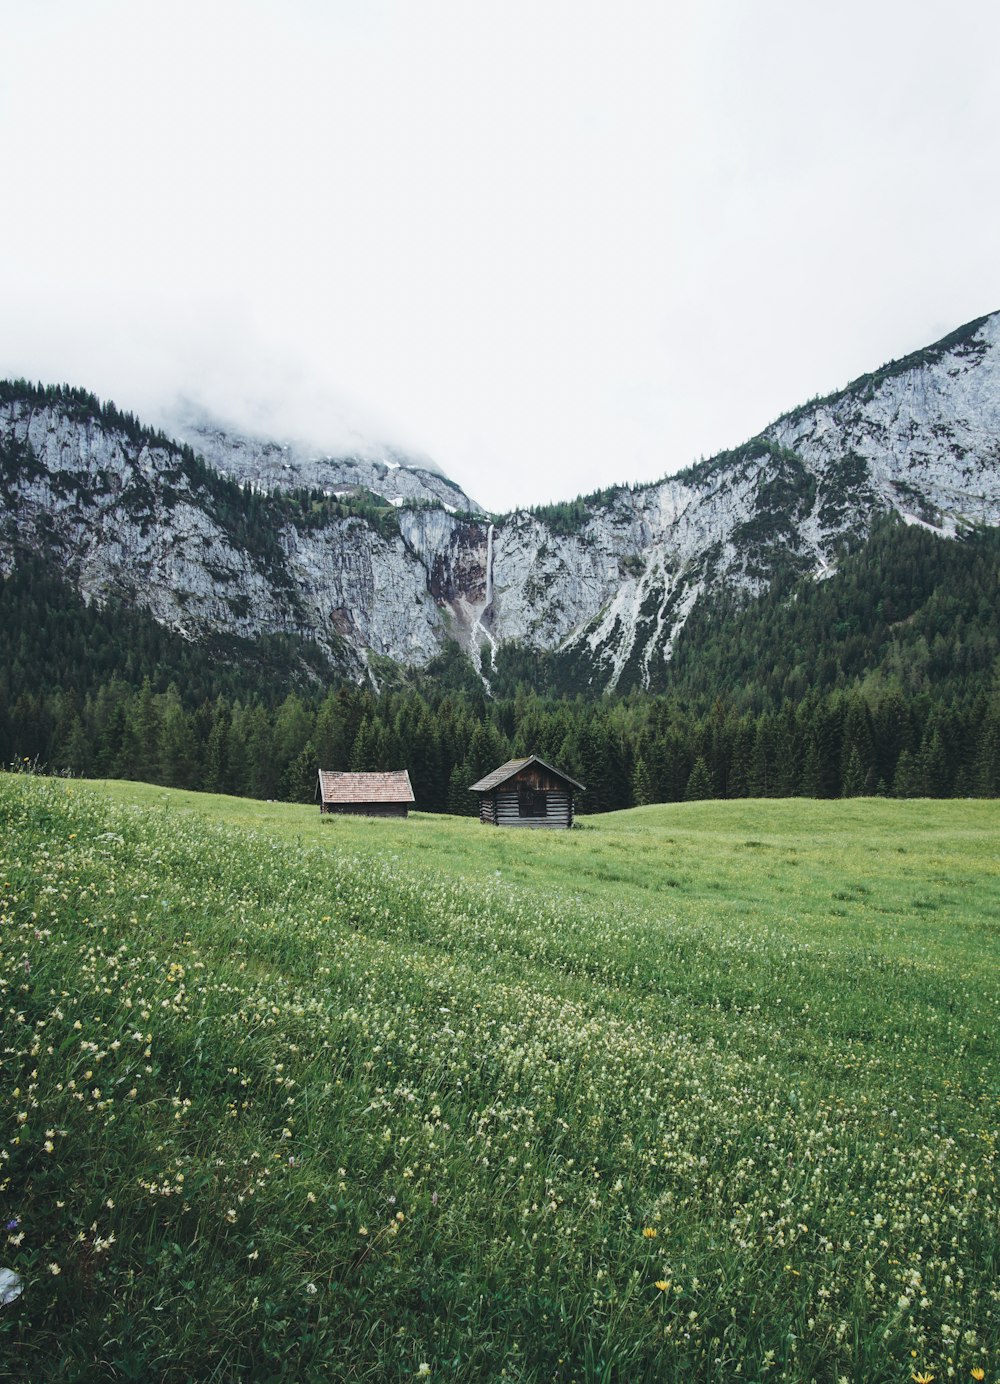 Graue Hütte in der Nähe des Berges während des Tages